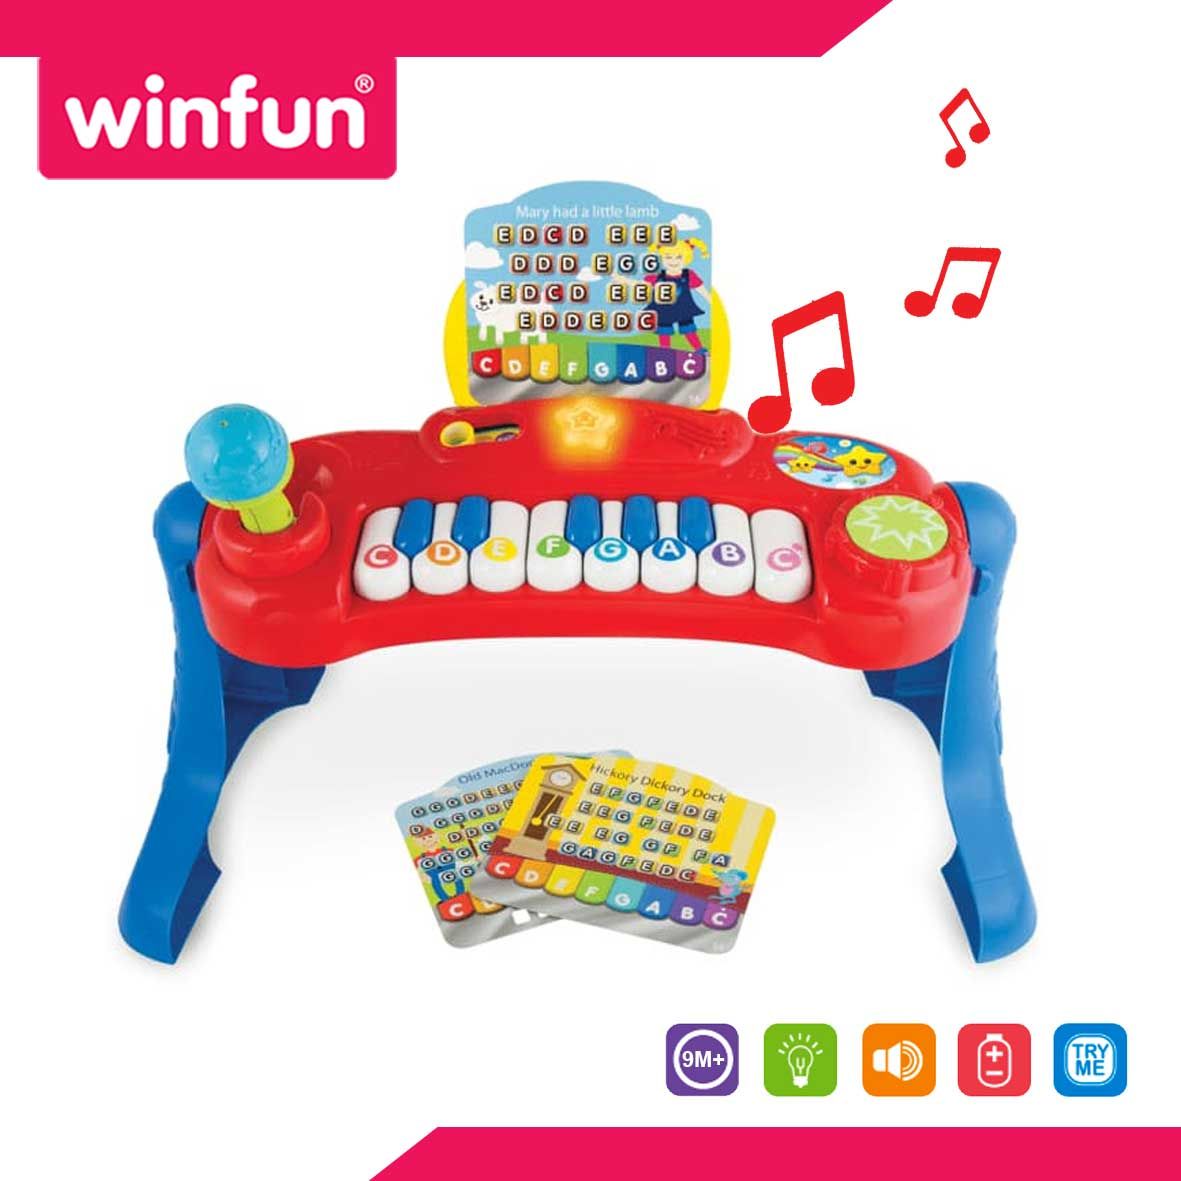 WinFun Baby Music Center - 2